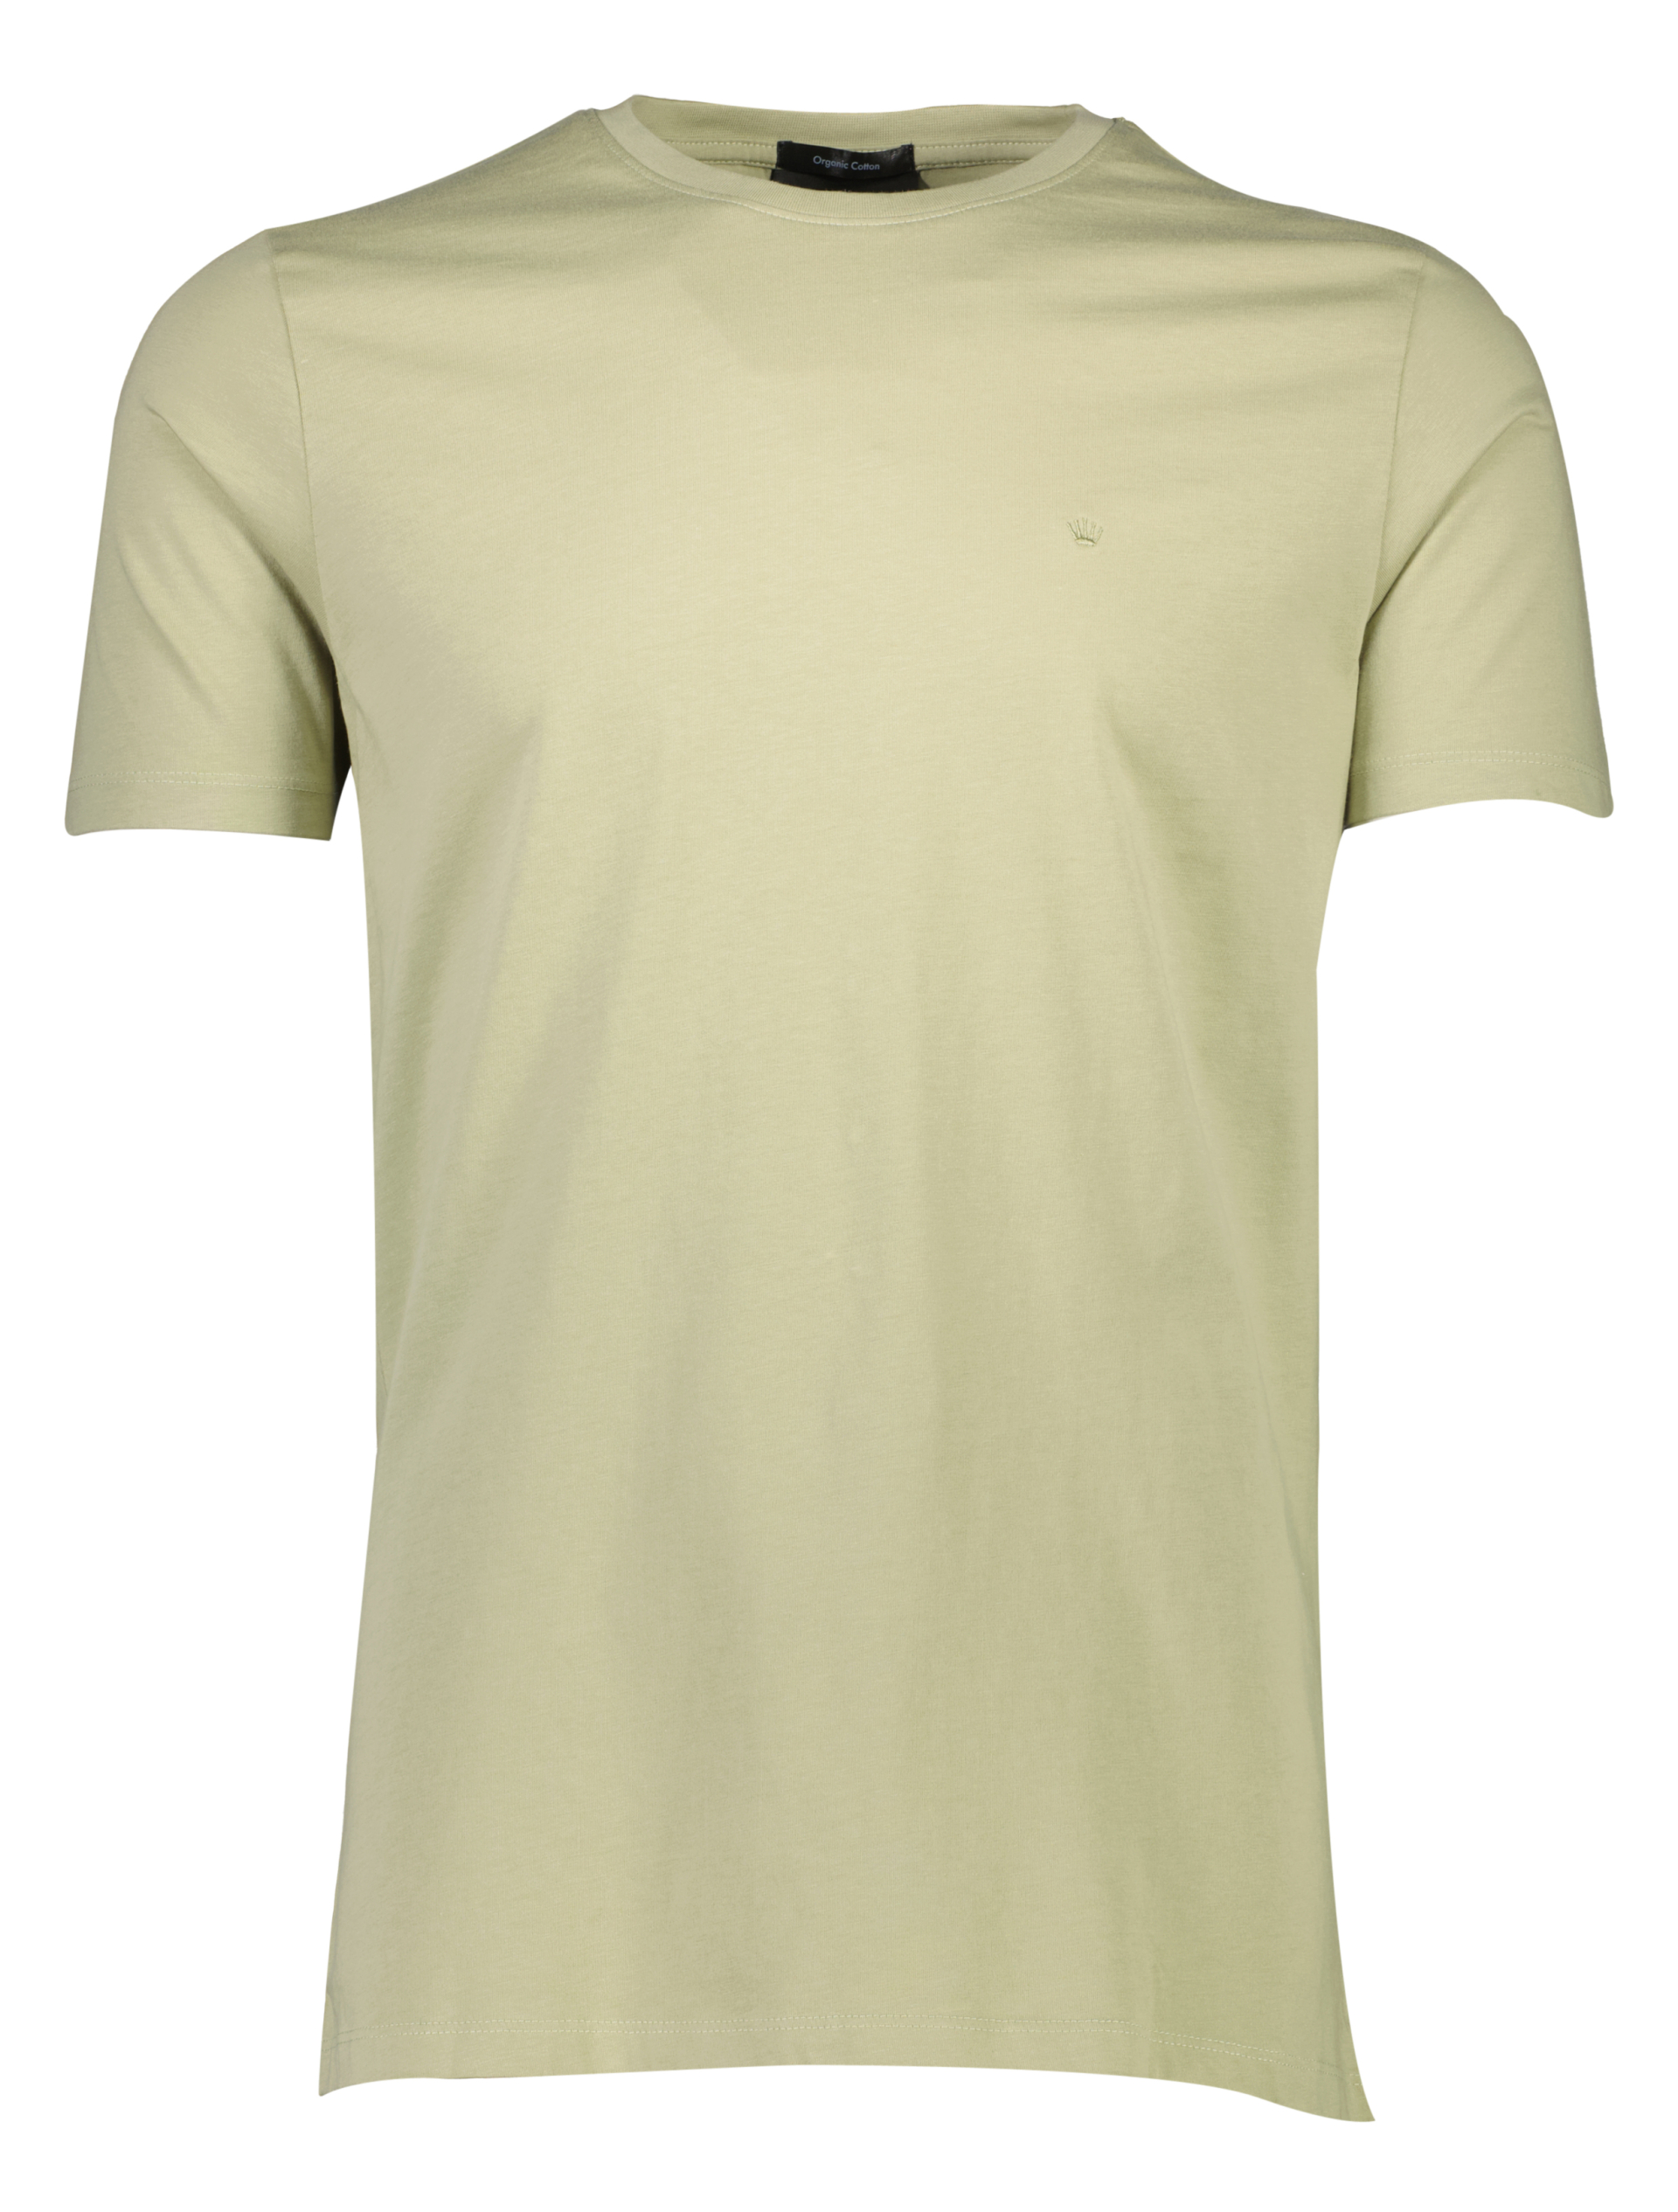 Junk de Luxe T-shirt grøn / lt pastel green